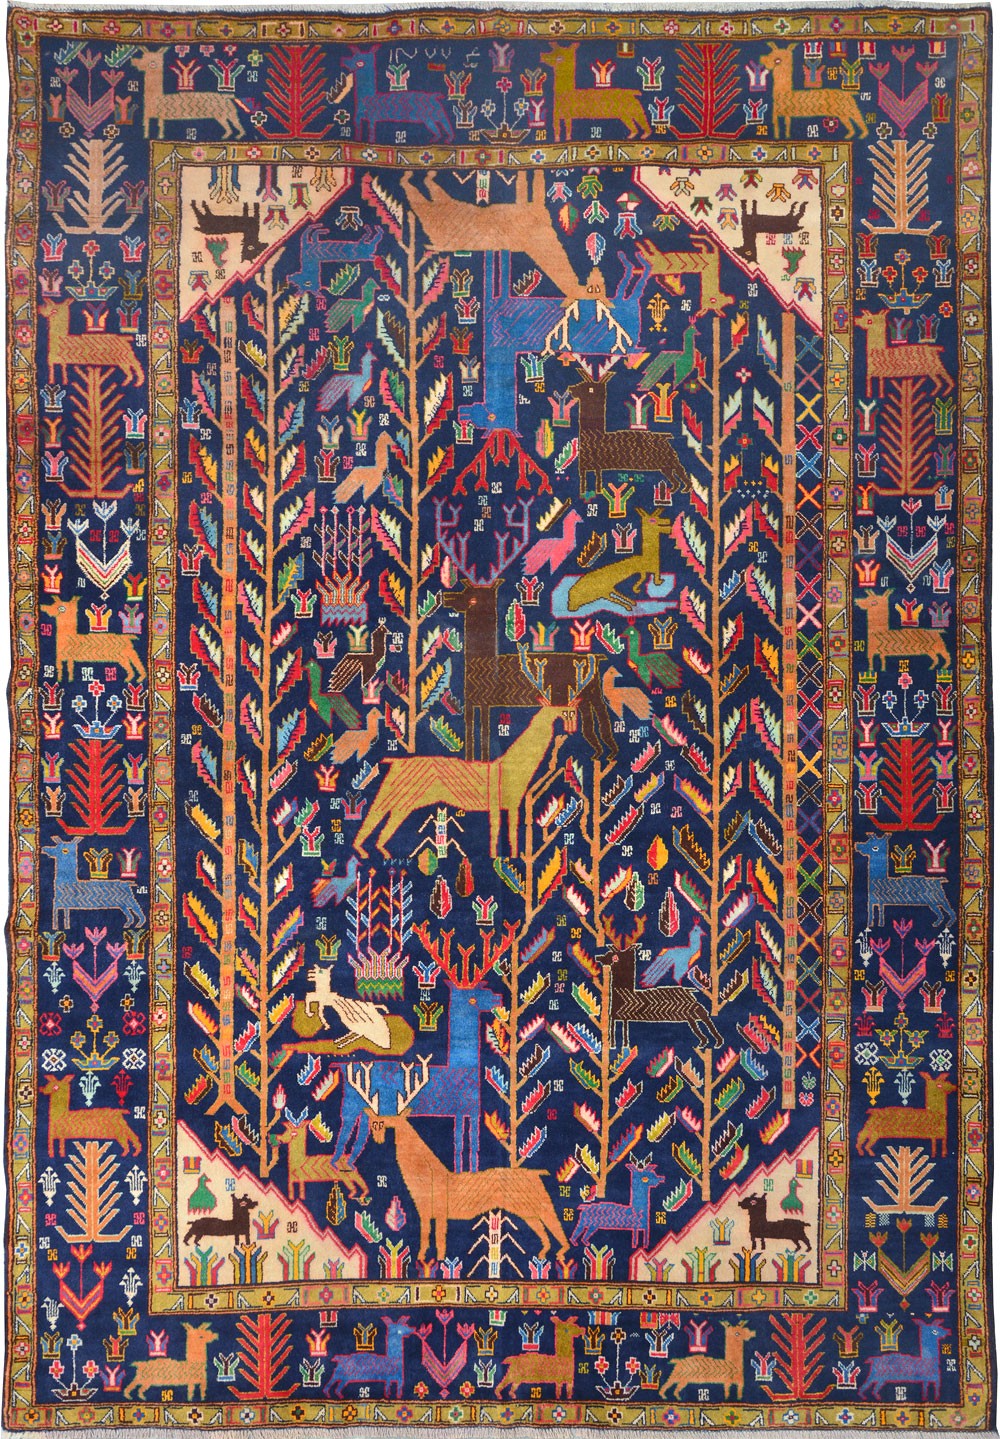 波斯地毯是地毯中的精品,其精湛的织造技艺和艺术价值已广为人知.